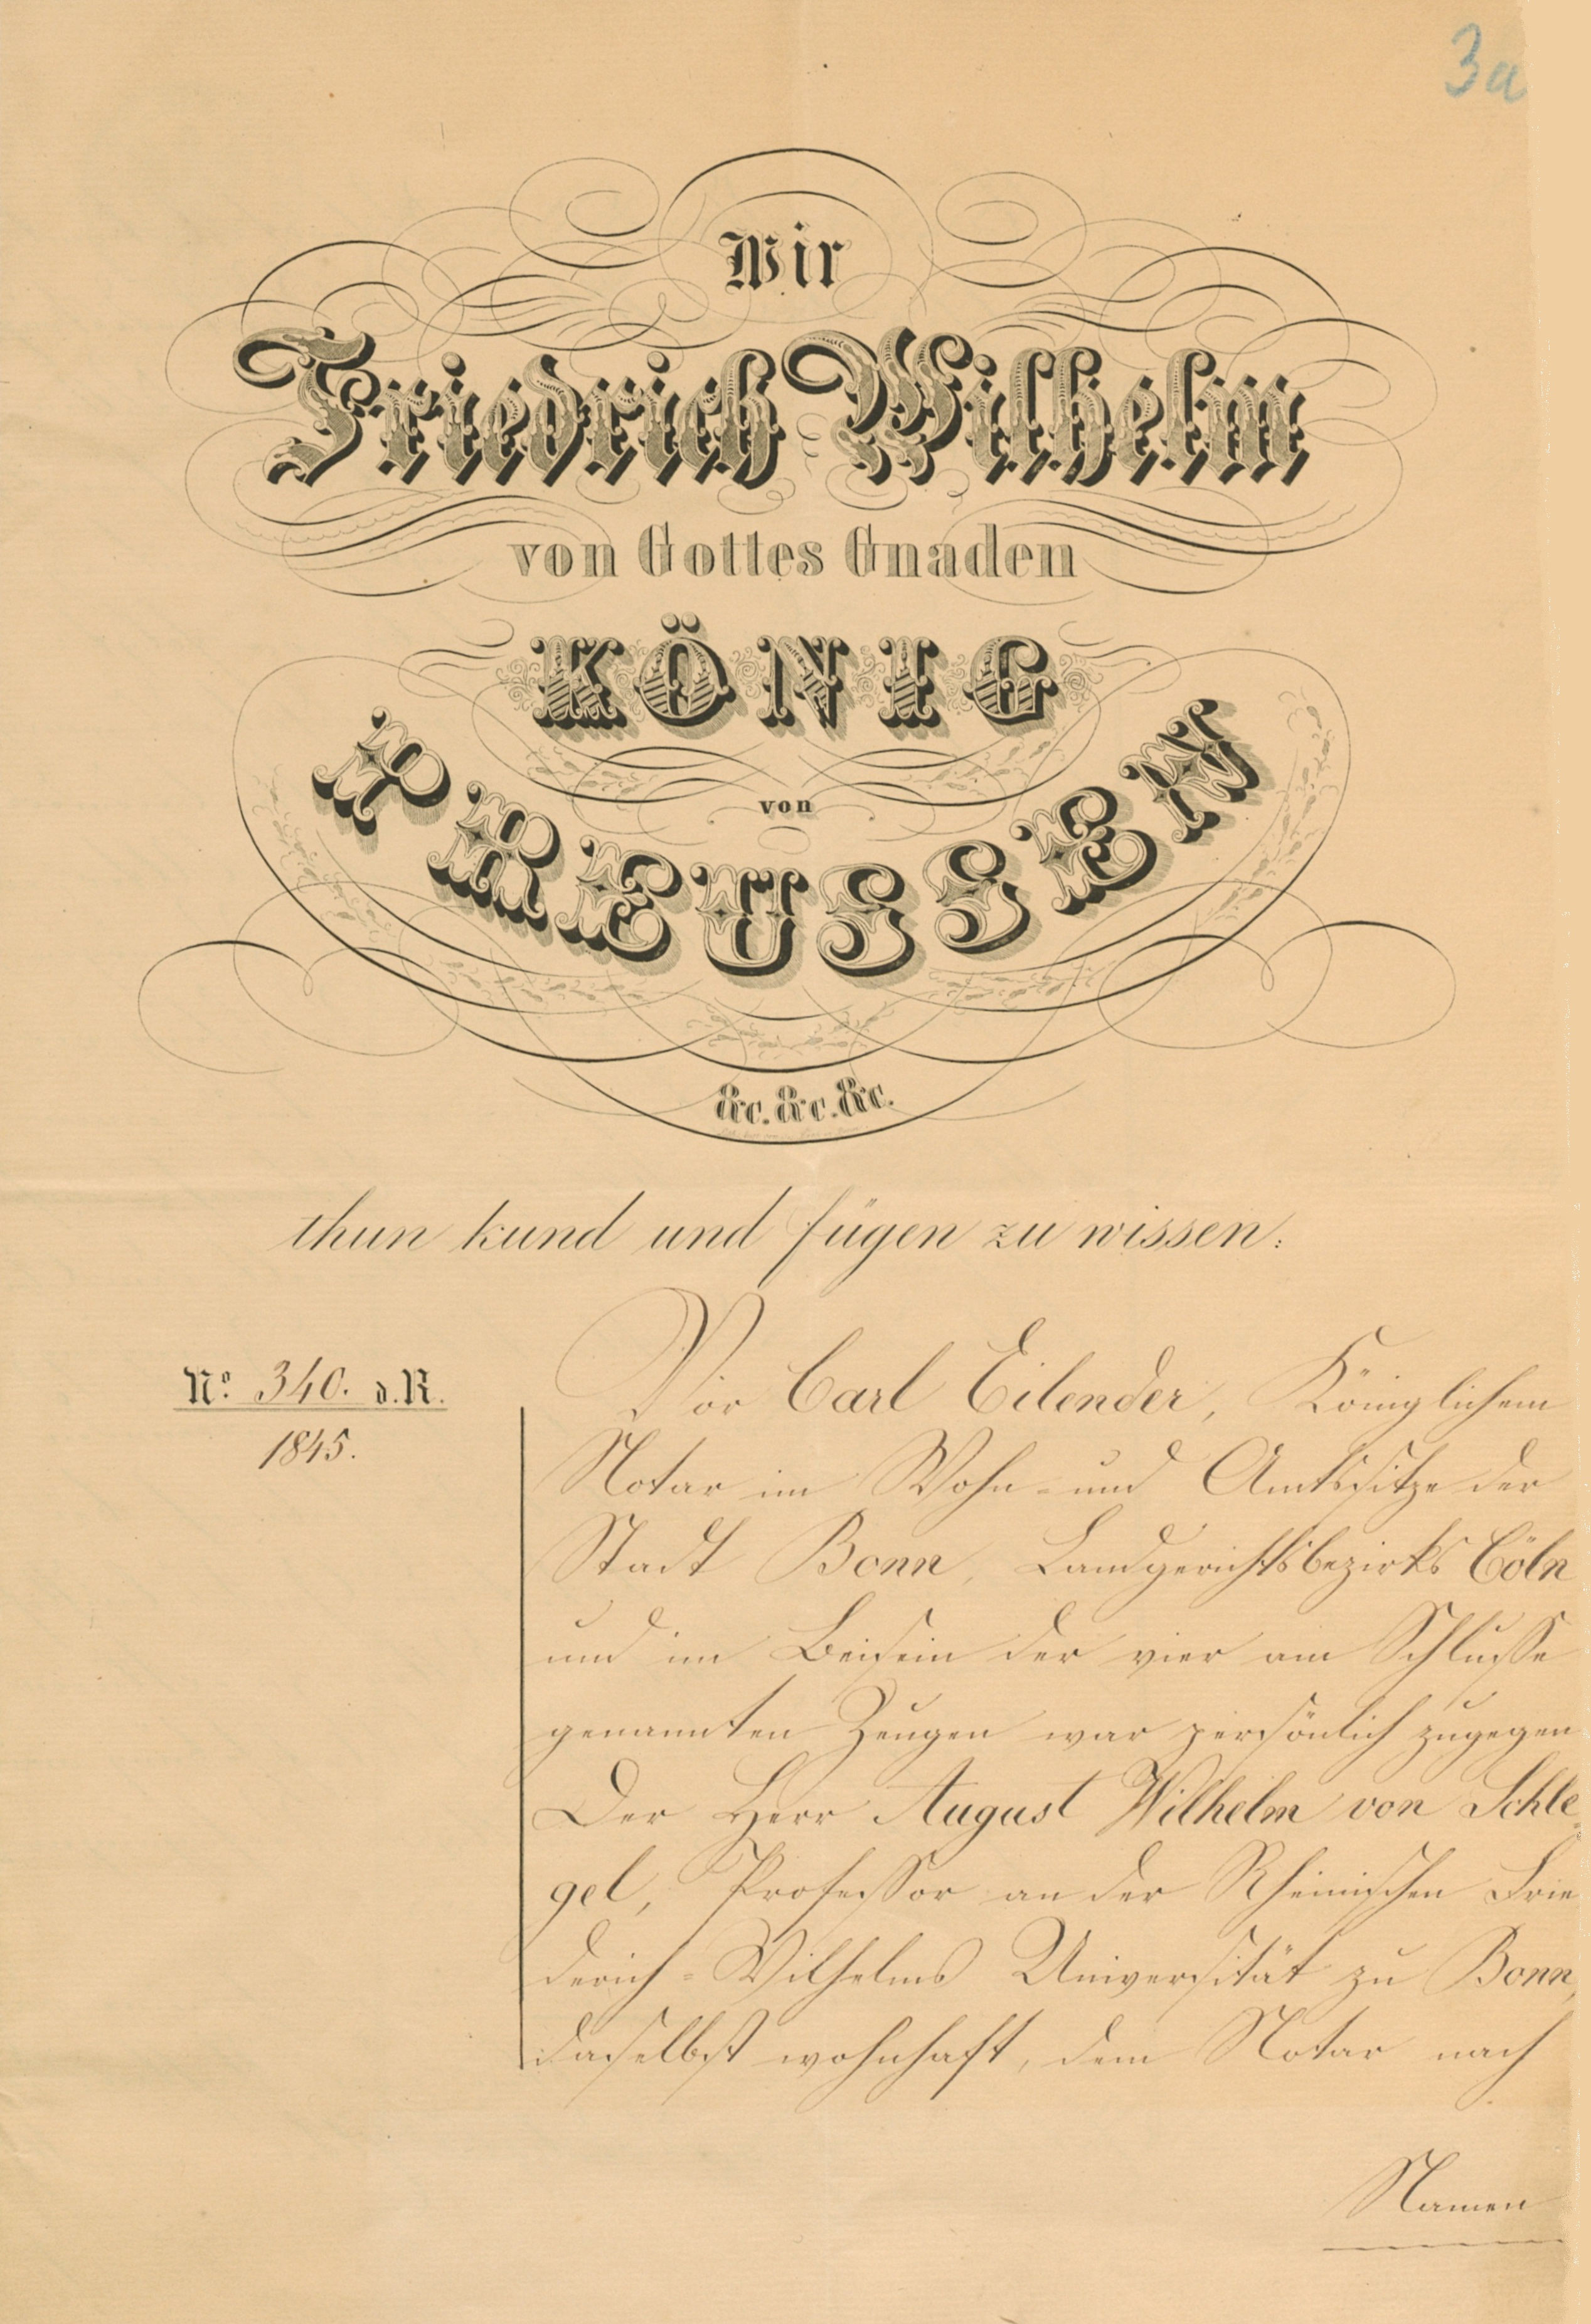 Testament von August Wilhelm von Schlegel (27. März 1845)